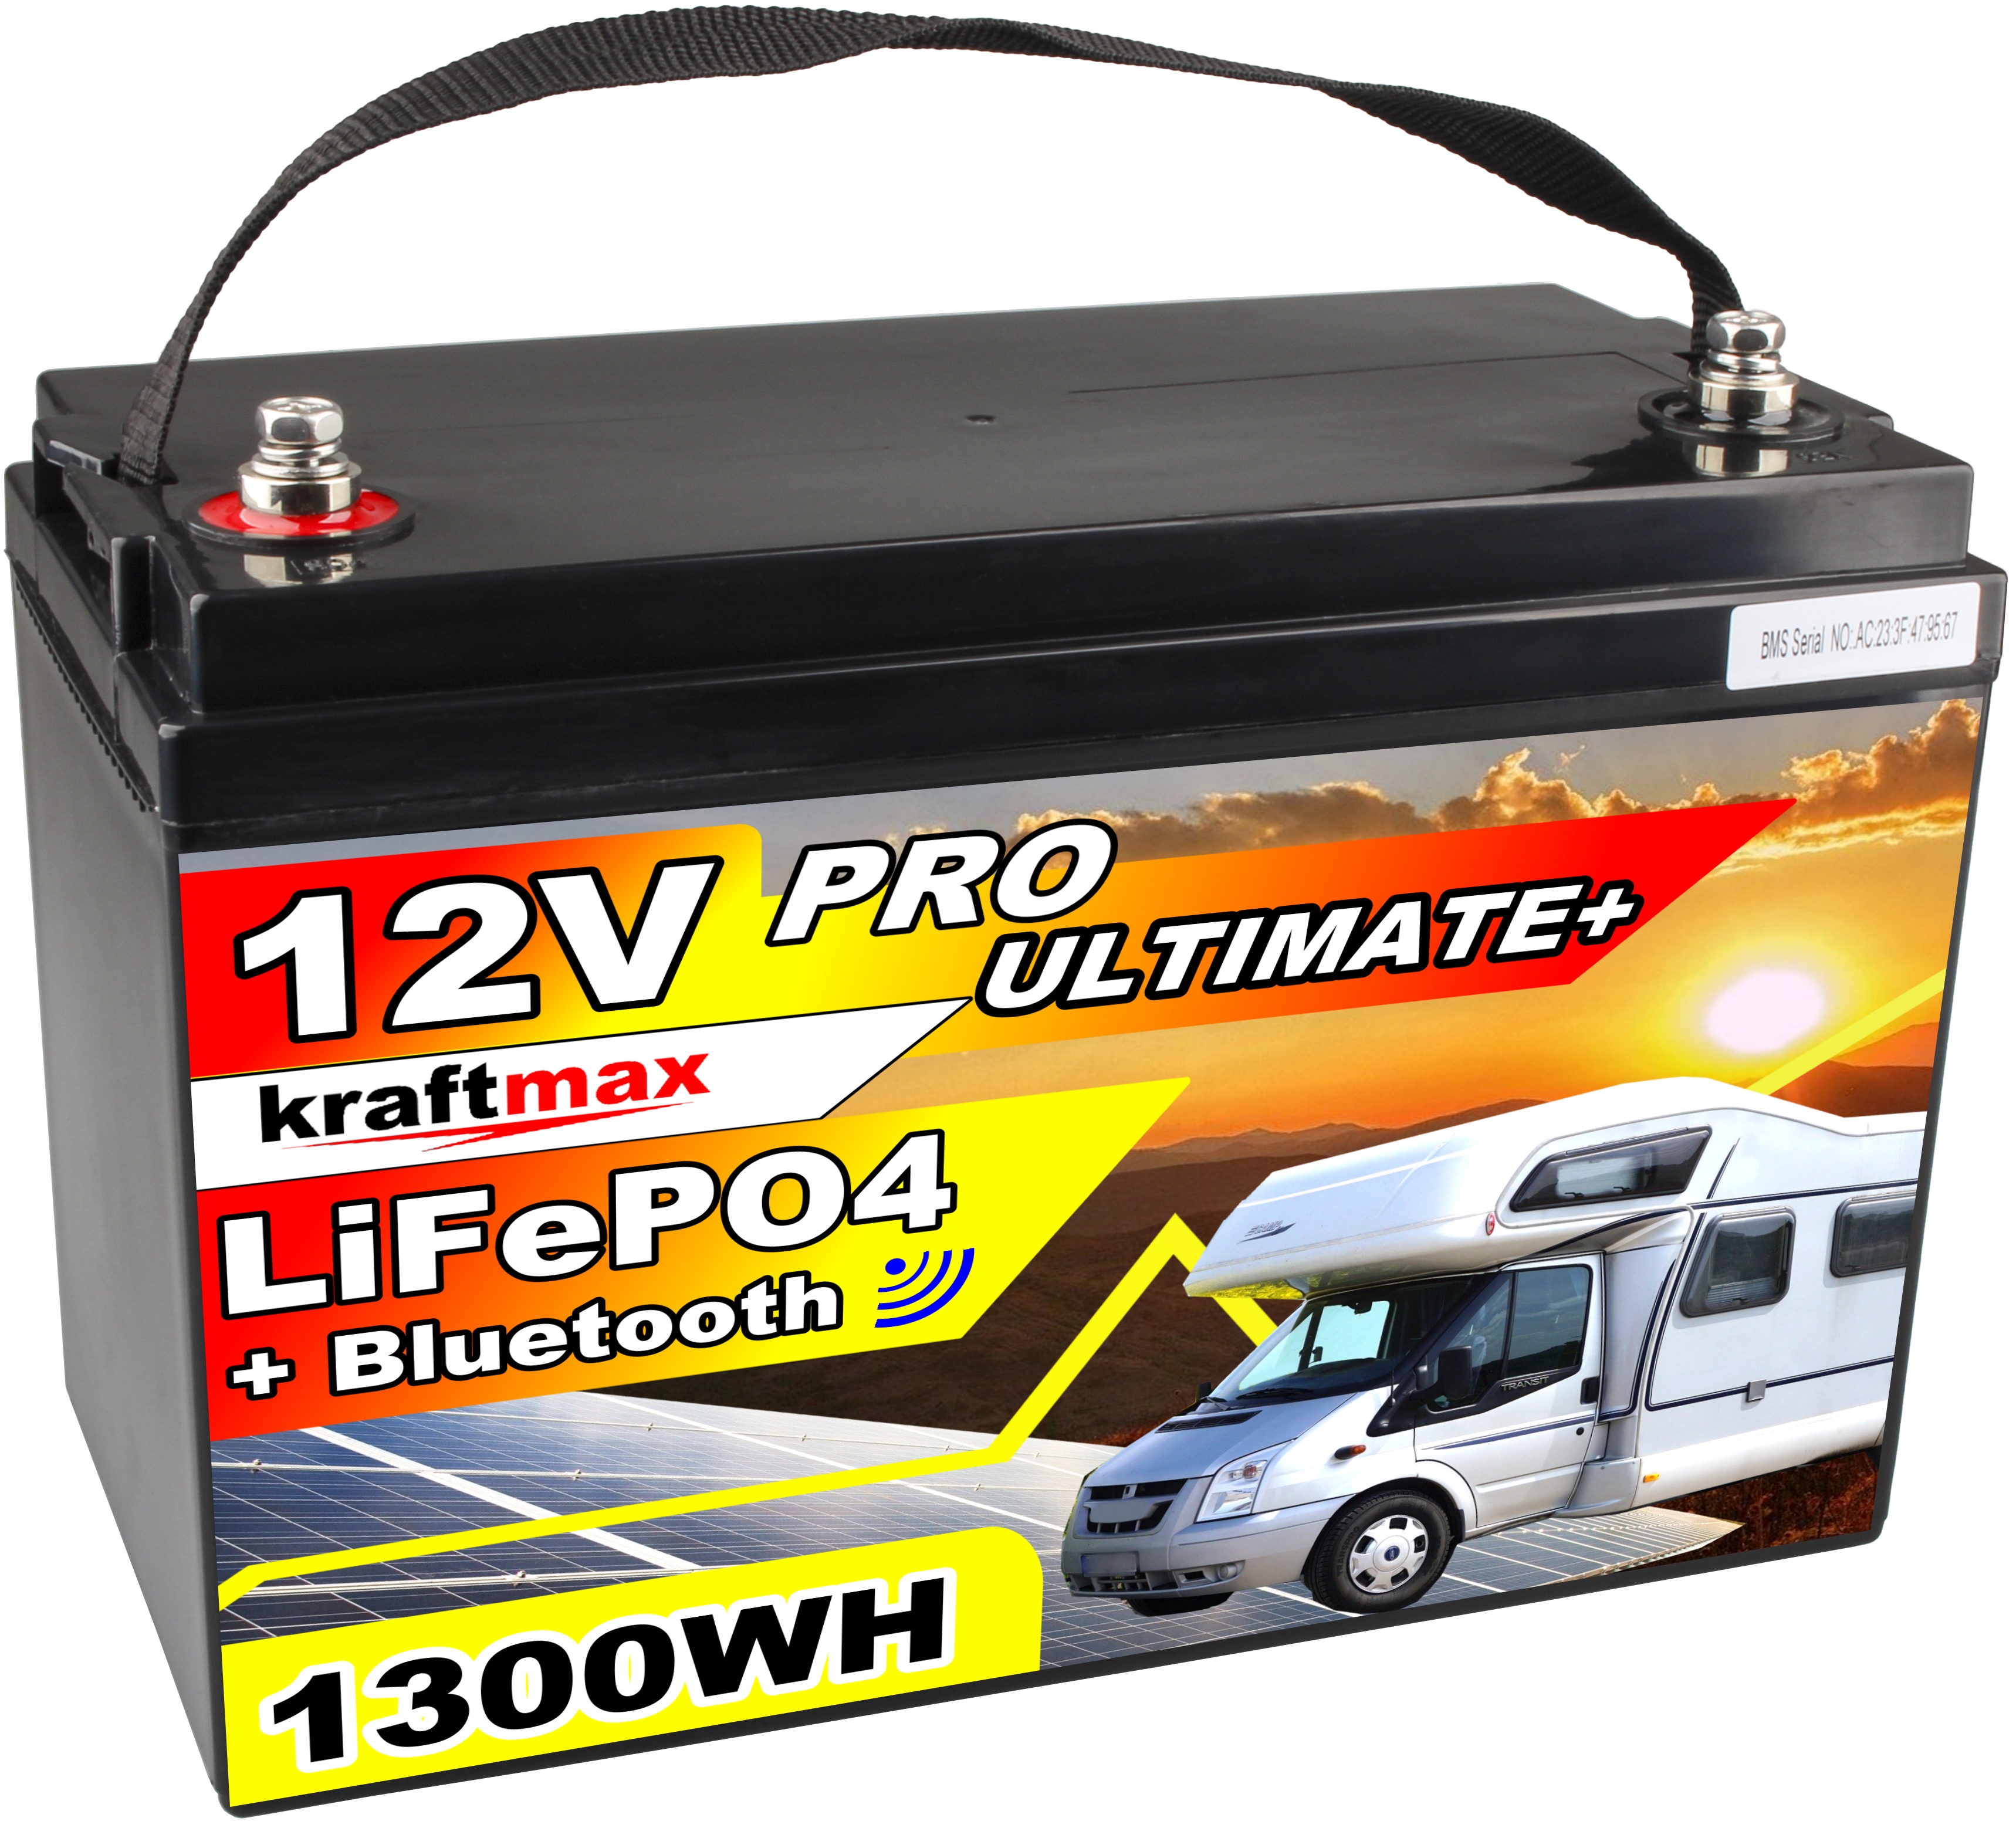 LiFePO4 Akku 12V mit Kapazität 100Ah Pro Ultimate inklusive